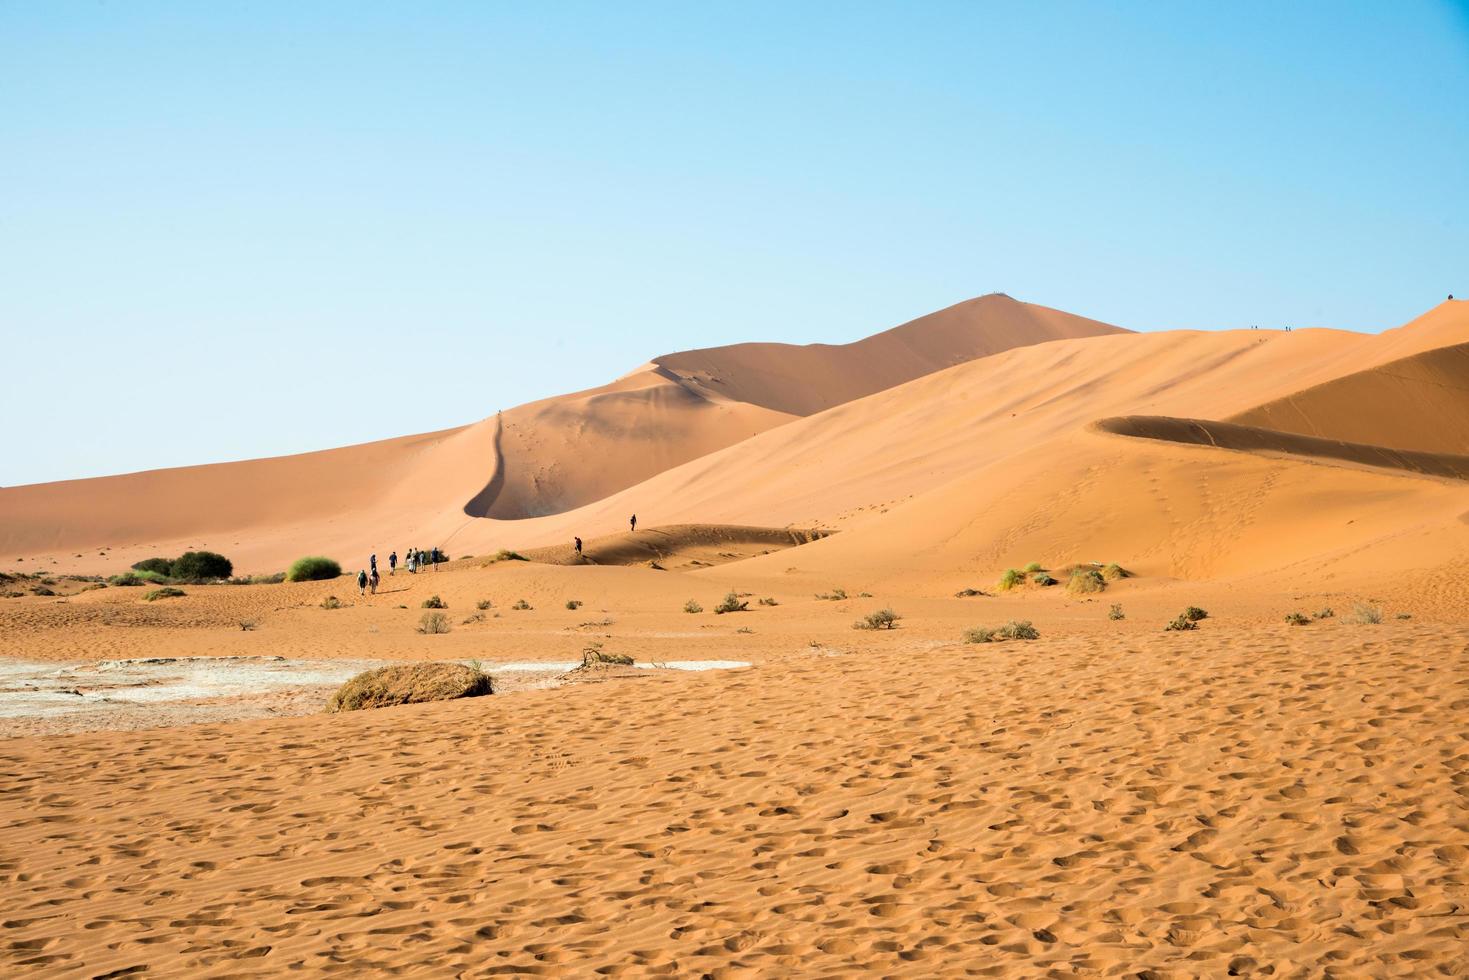 paisagem do deserto. dunas de areia e grupo de pessoas vistas de costas caminhando sobre uma duna. namibia foto